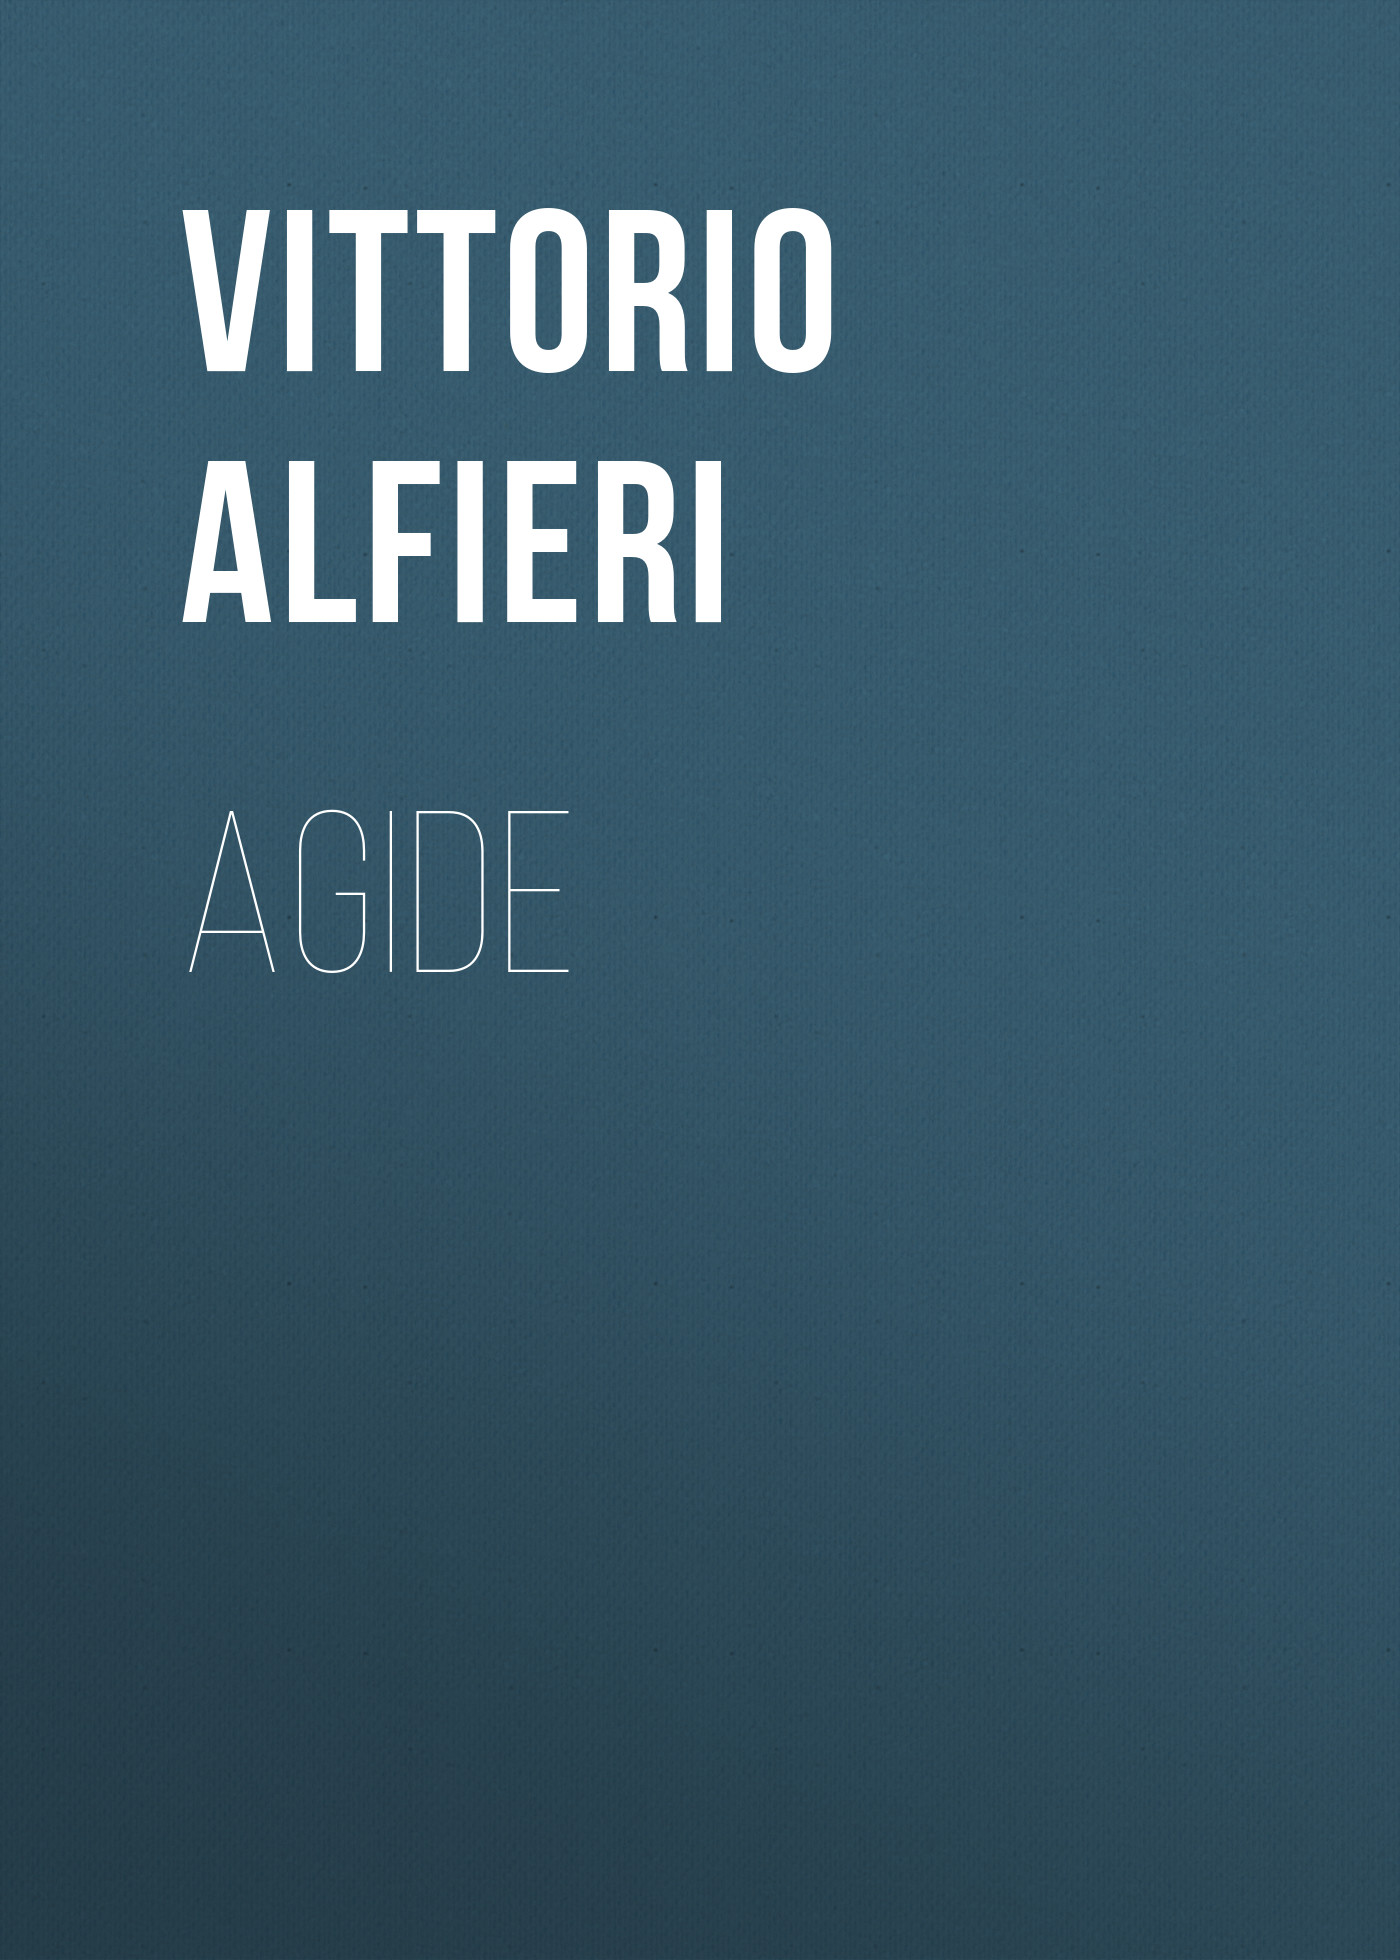 Книга Agide из серии , созданная Vittorio Alfieri, может относится к жанру Зарубежная старинная литература, Зарубежная классика, Зарубежная драматургия. Стоимость электронной книги Agide с идентификатором 24175492 составляет 0.90 руб.